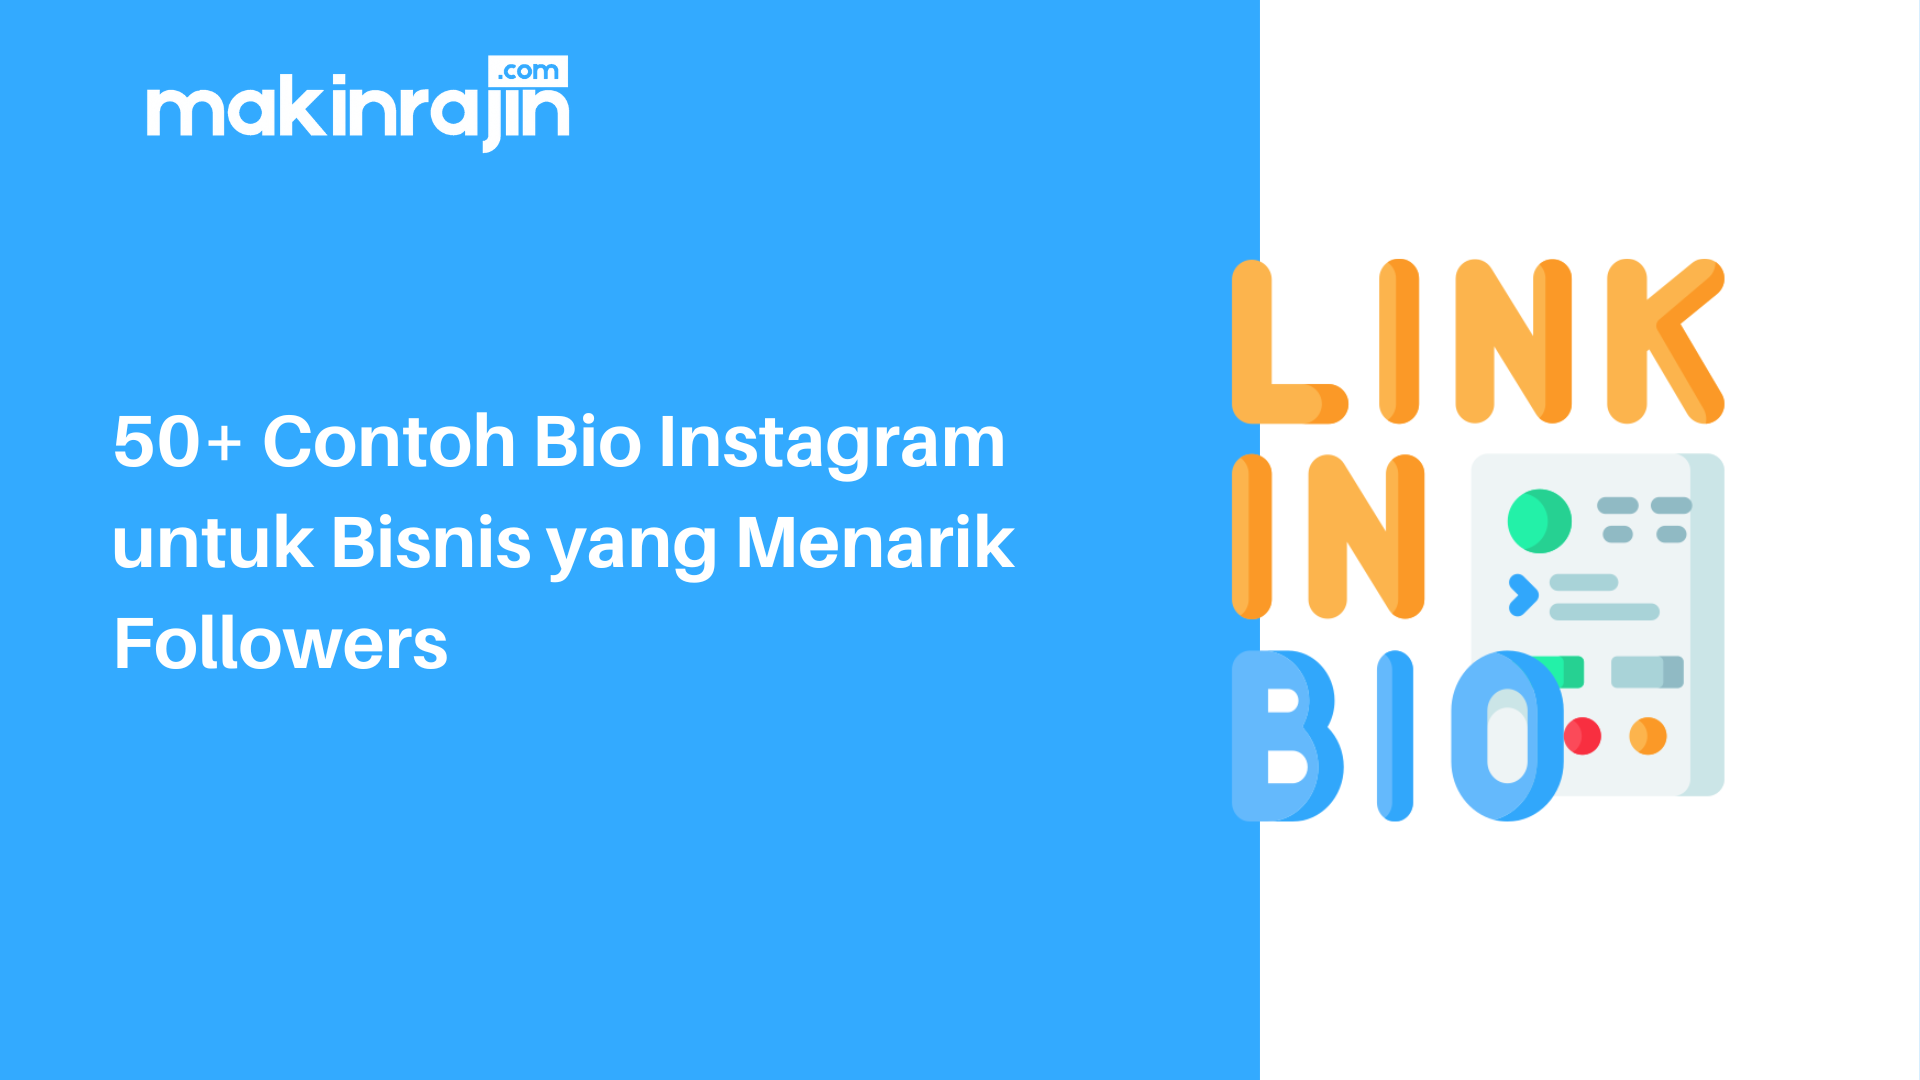 50+ Contoh Bio Instagram untuk Bisnis yang Menarik Followers